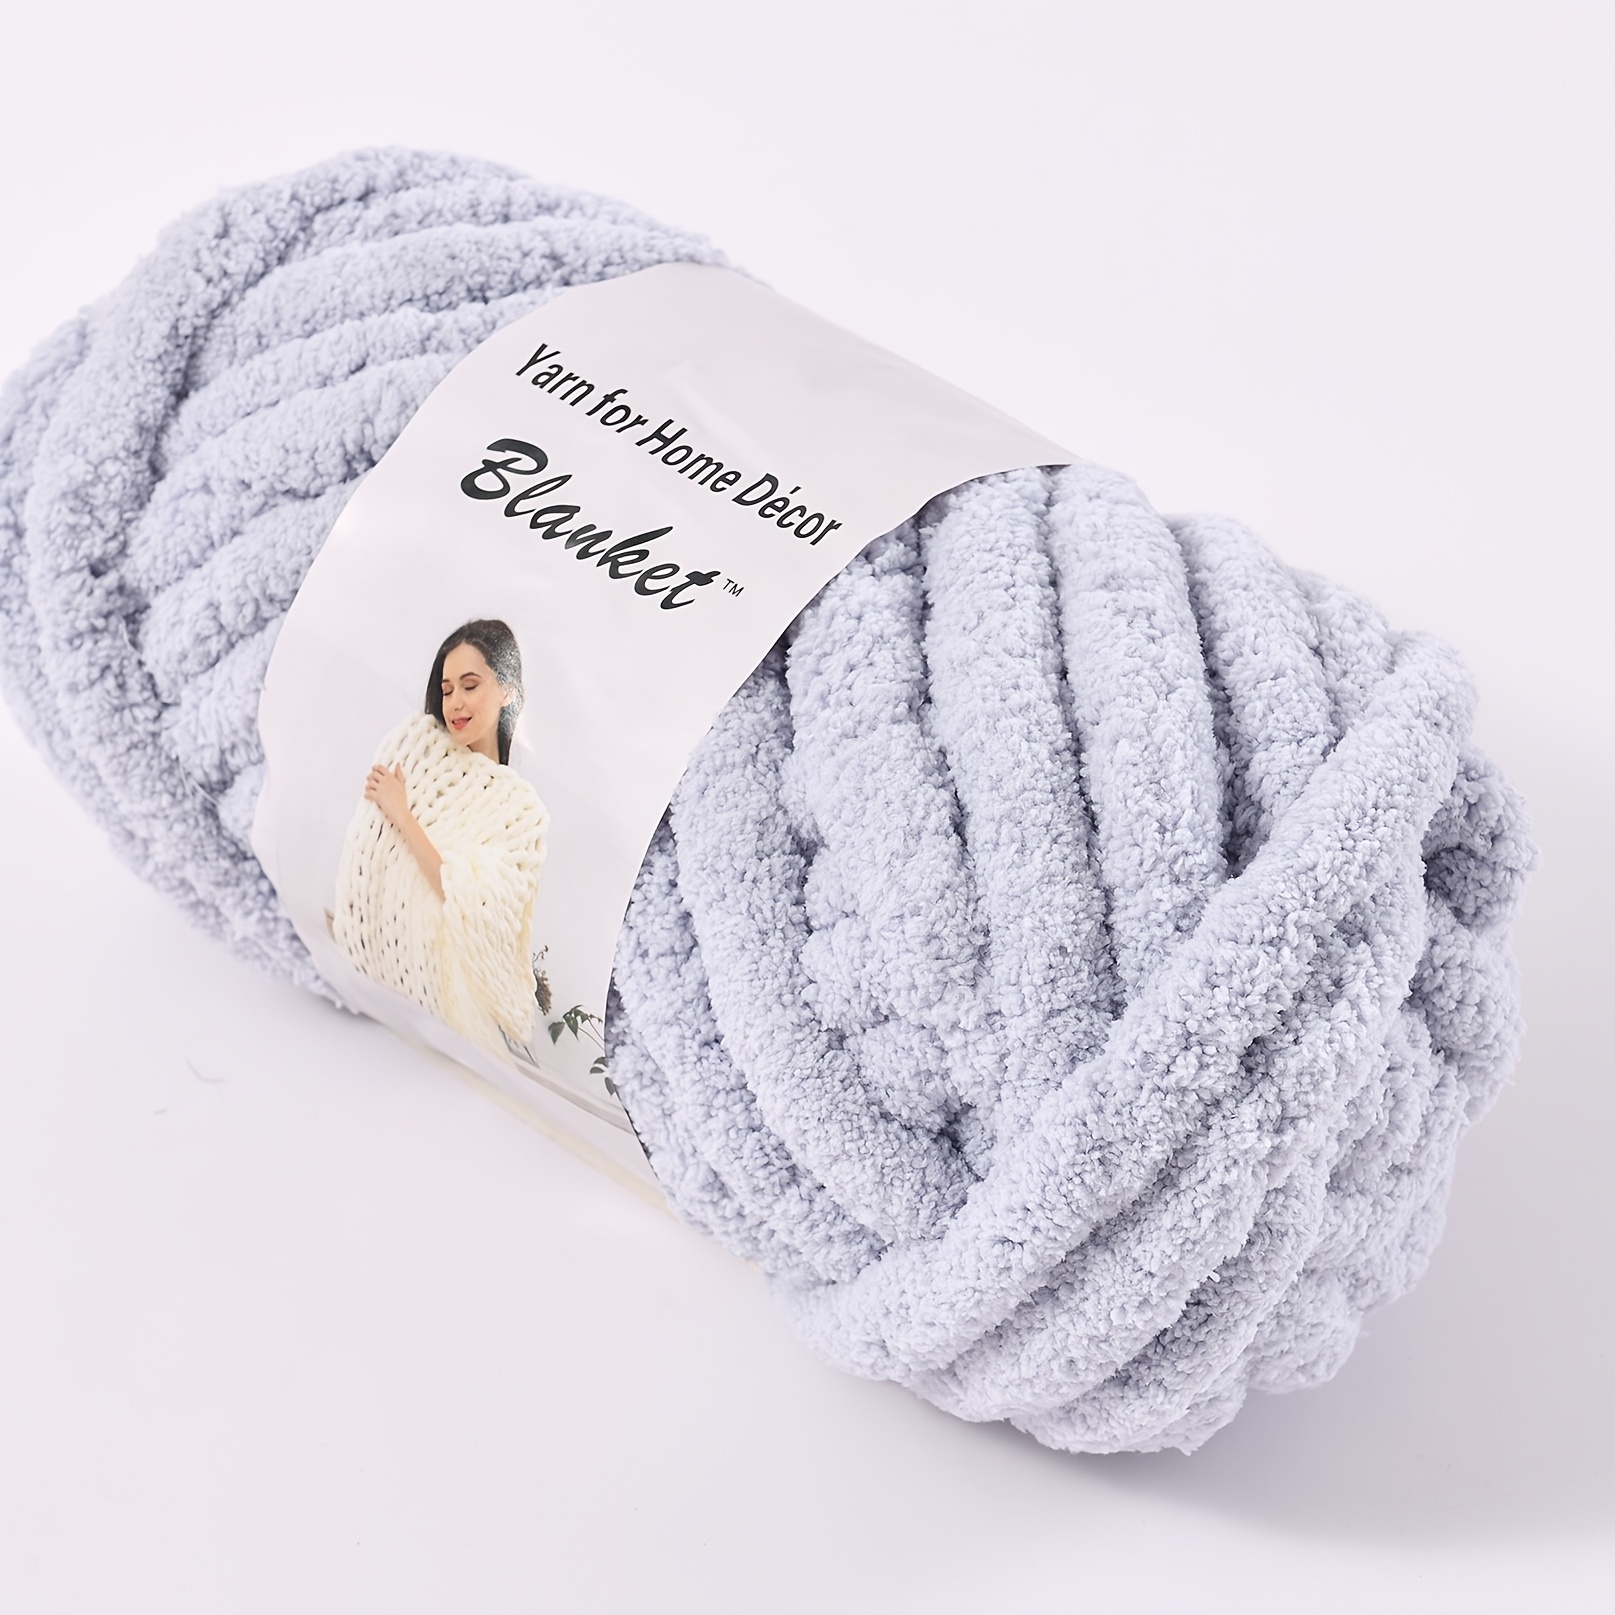  Bulk Chenille Chunky Yarn,Blanket Making Kit,100g